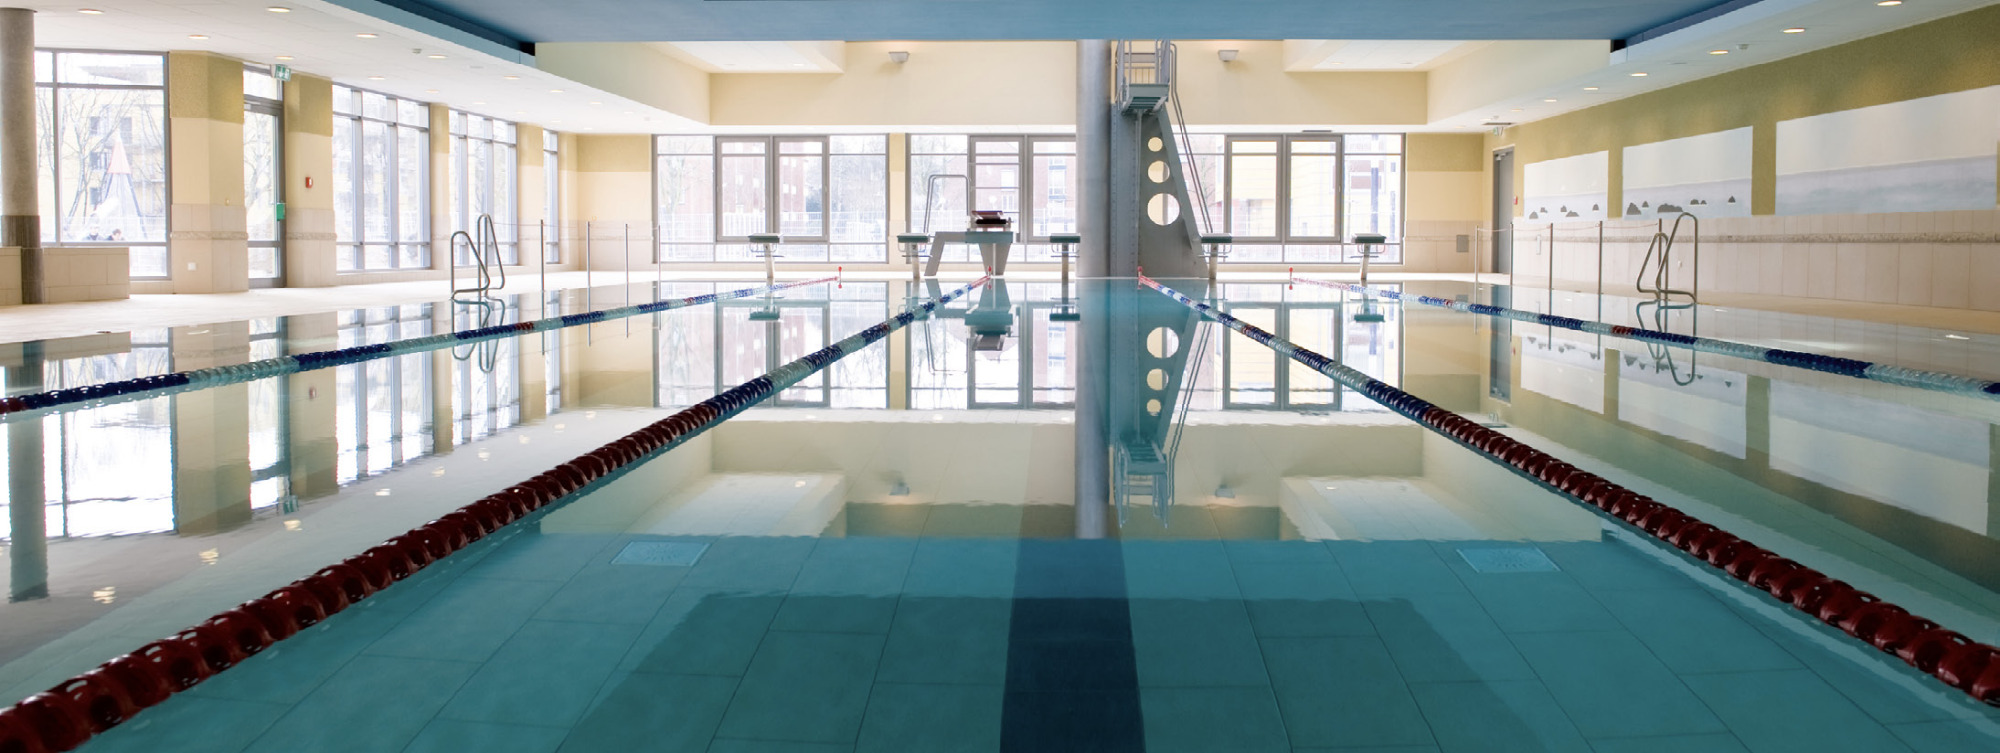 Schwimmbad mit hellen Wänden, Fensterfront und dunkler Decke